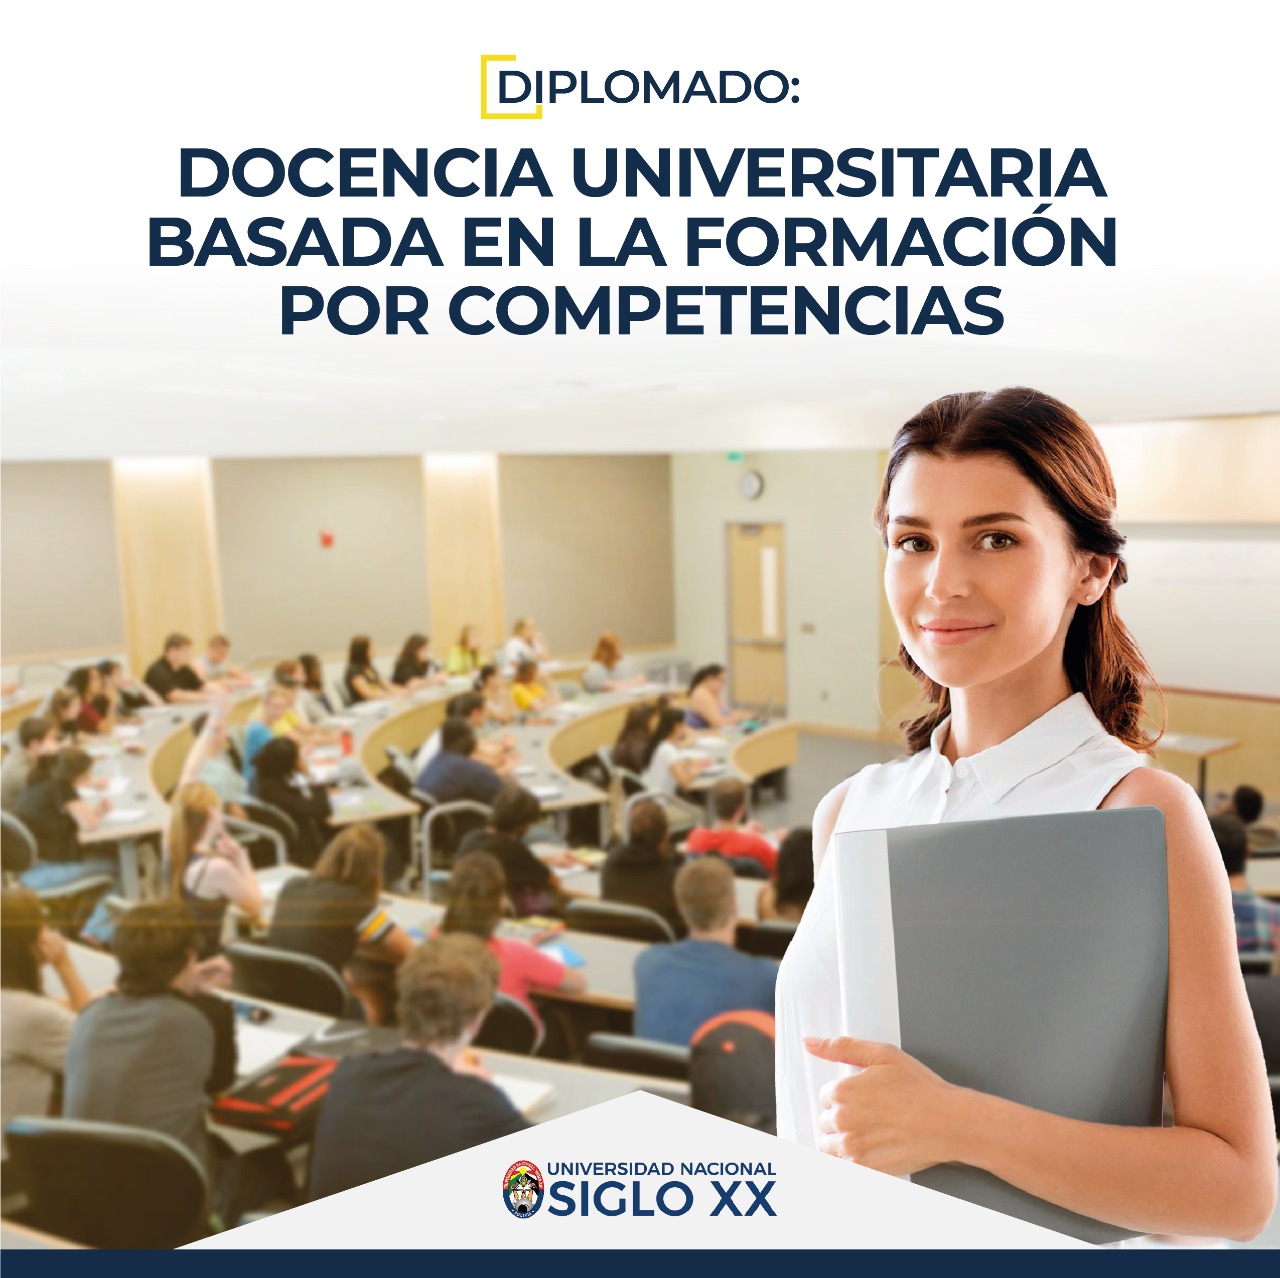 Diplomado DOCENCIA UNIVERSITARIA BASADA EN LA FORMACIÓN POR COMPETENCIAS